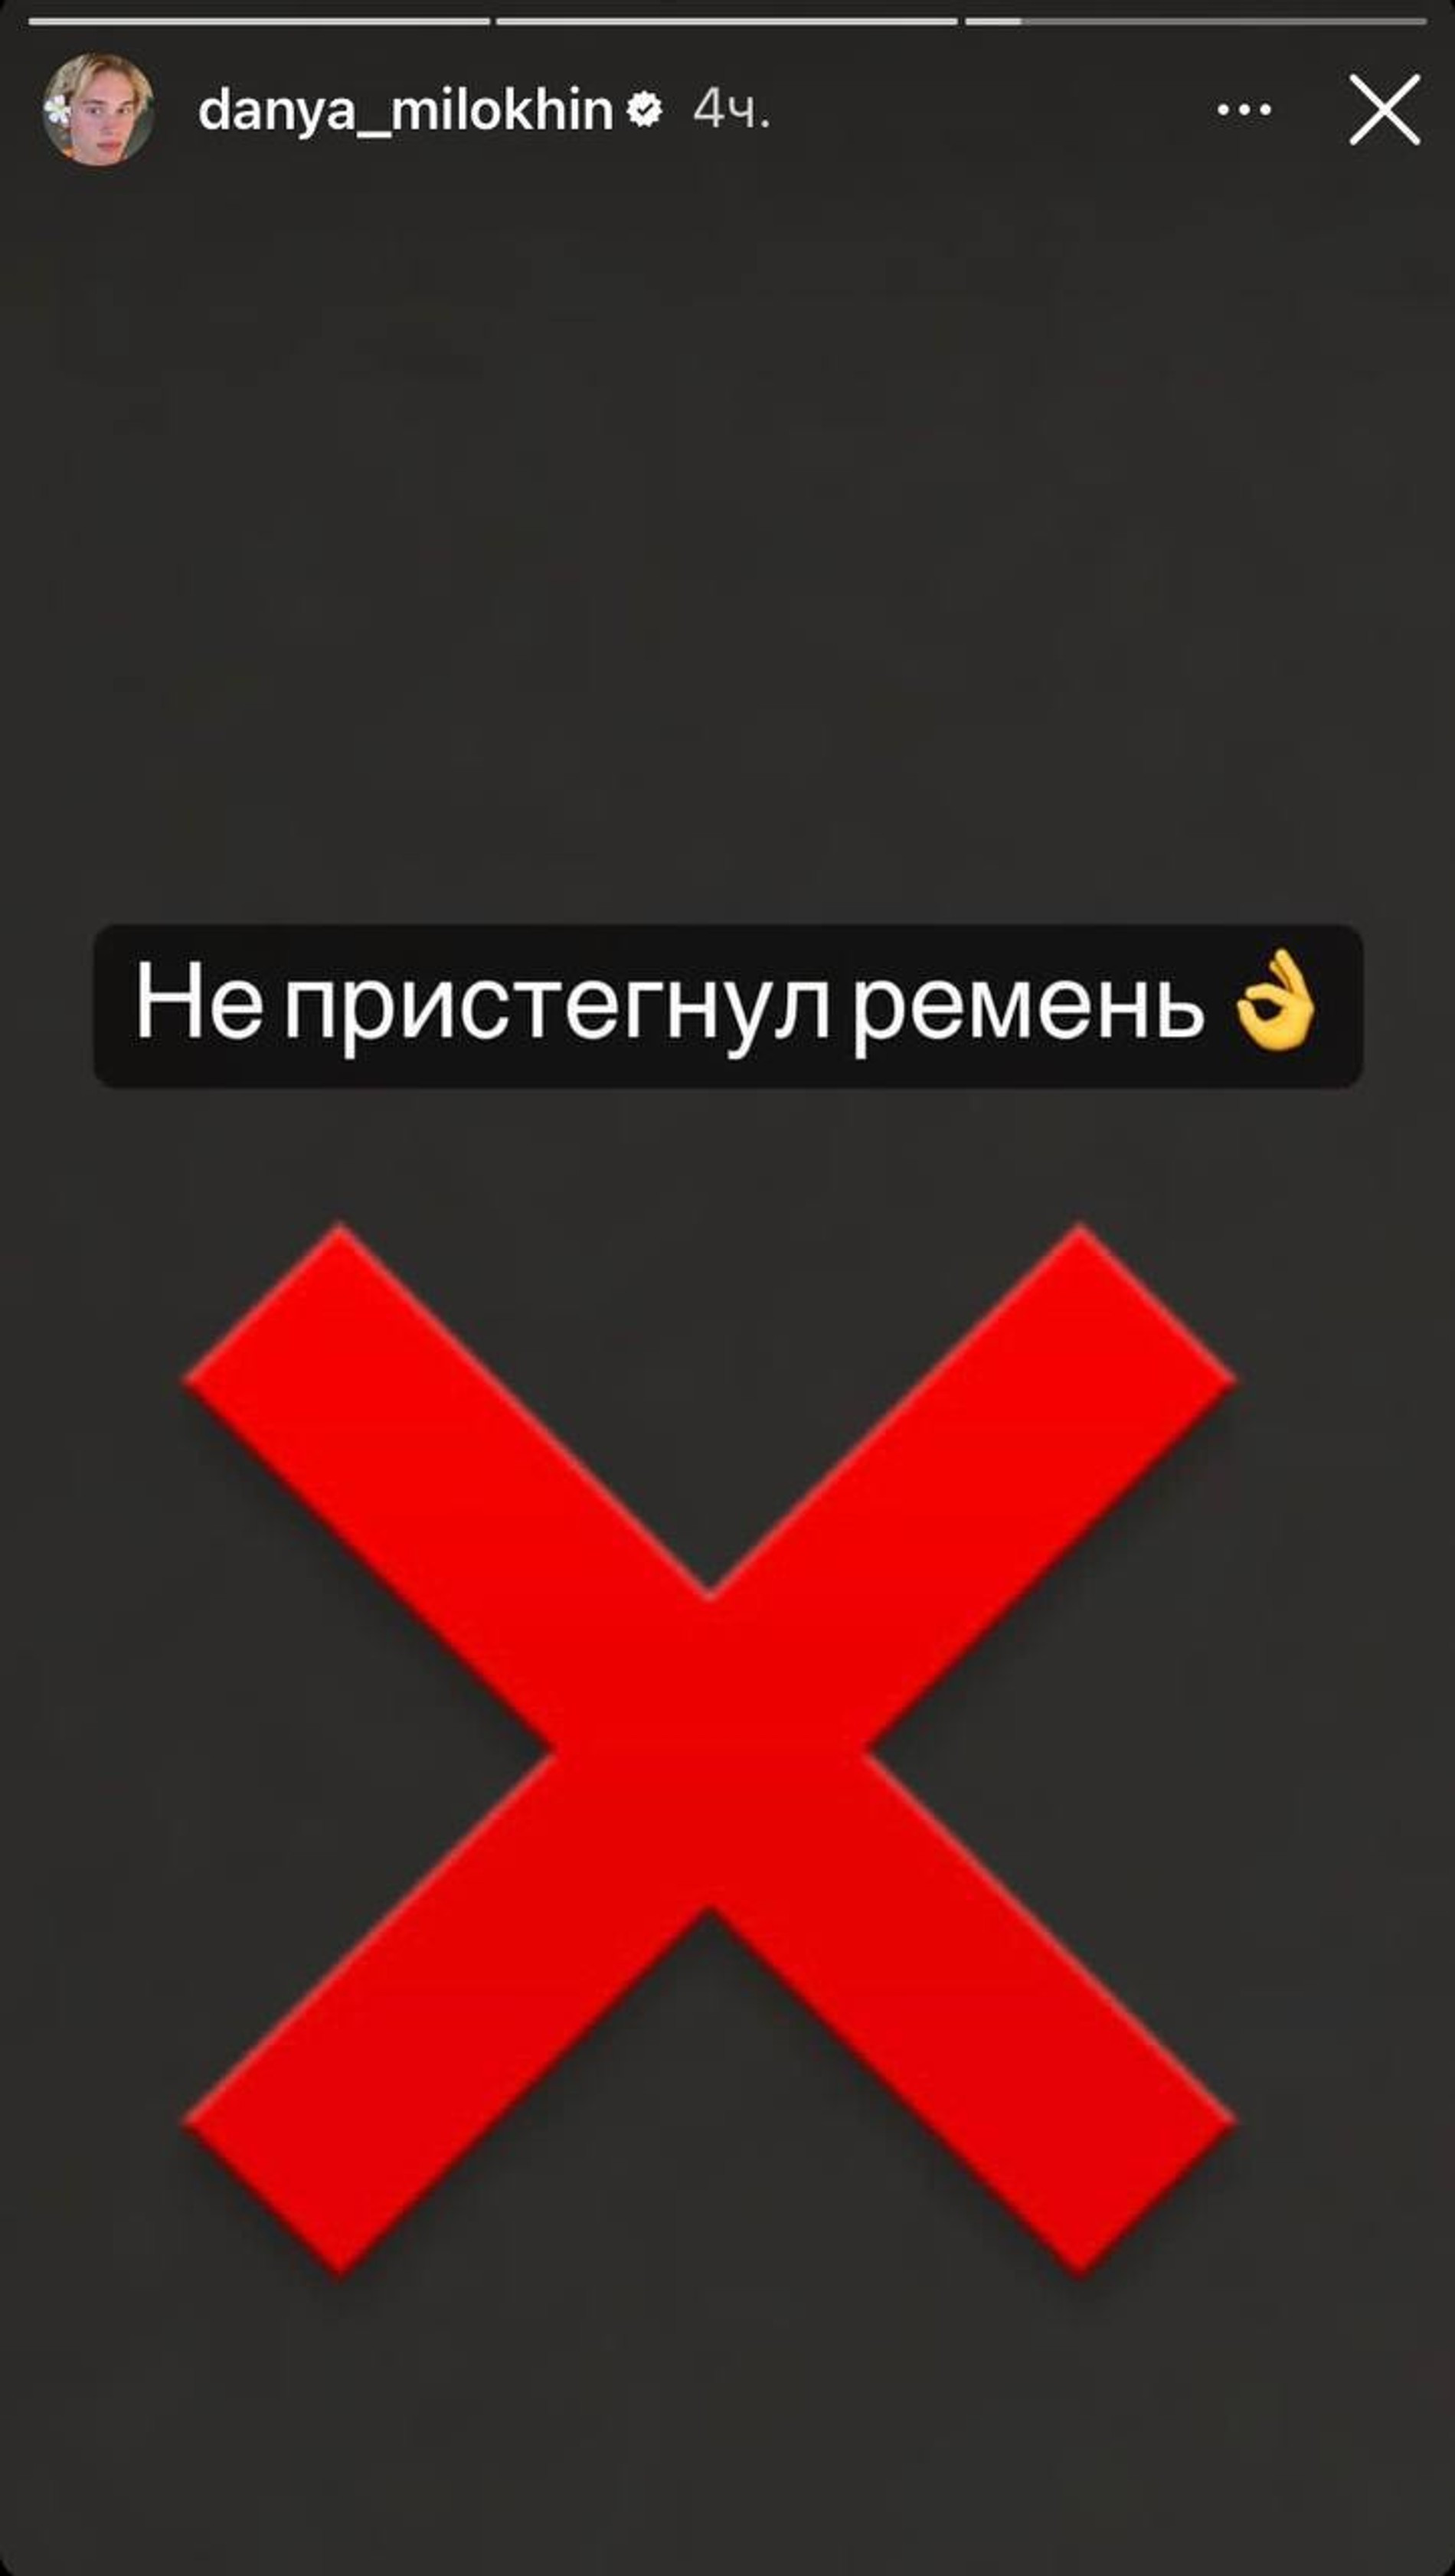 Фото: Инстаграм (запрещен в РФ) @danya_milokhin